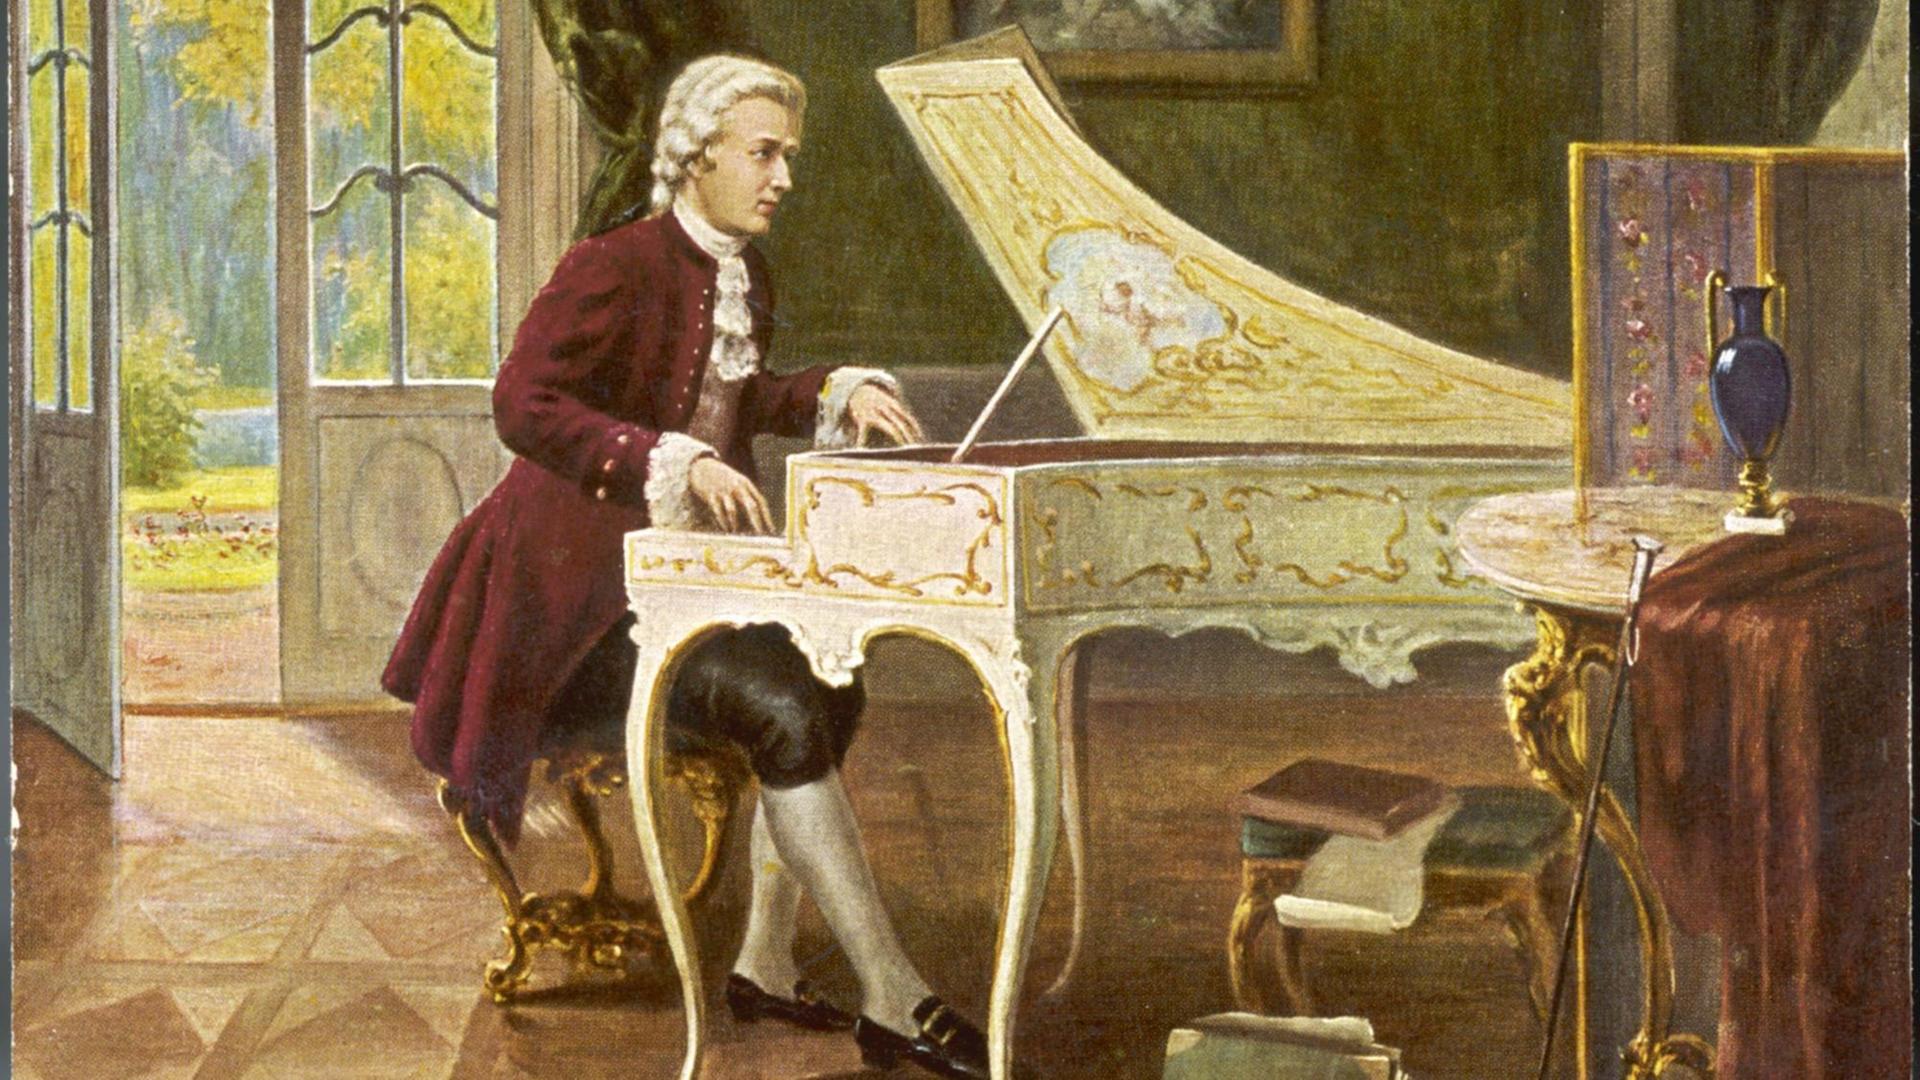 nhà soạn nhạc vĩ đại Mozart 